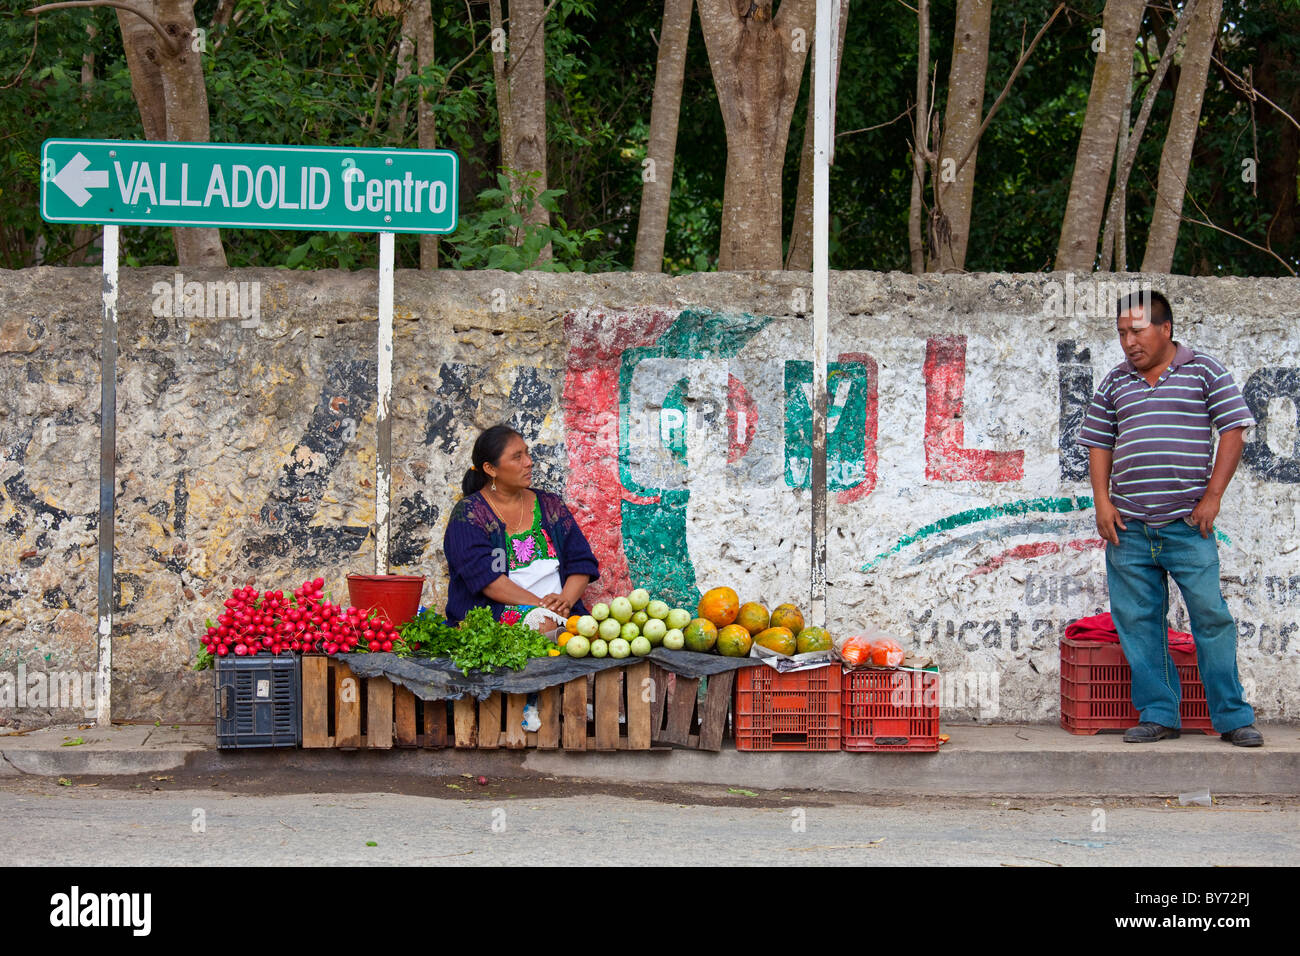 Mujer vendiendo verduras, Valladolid, Península de Yucatán, México Foto de stock